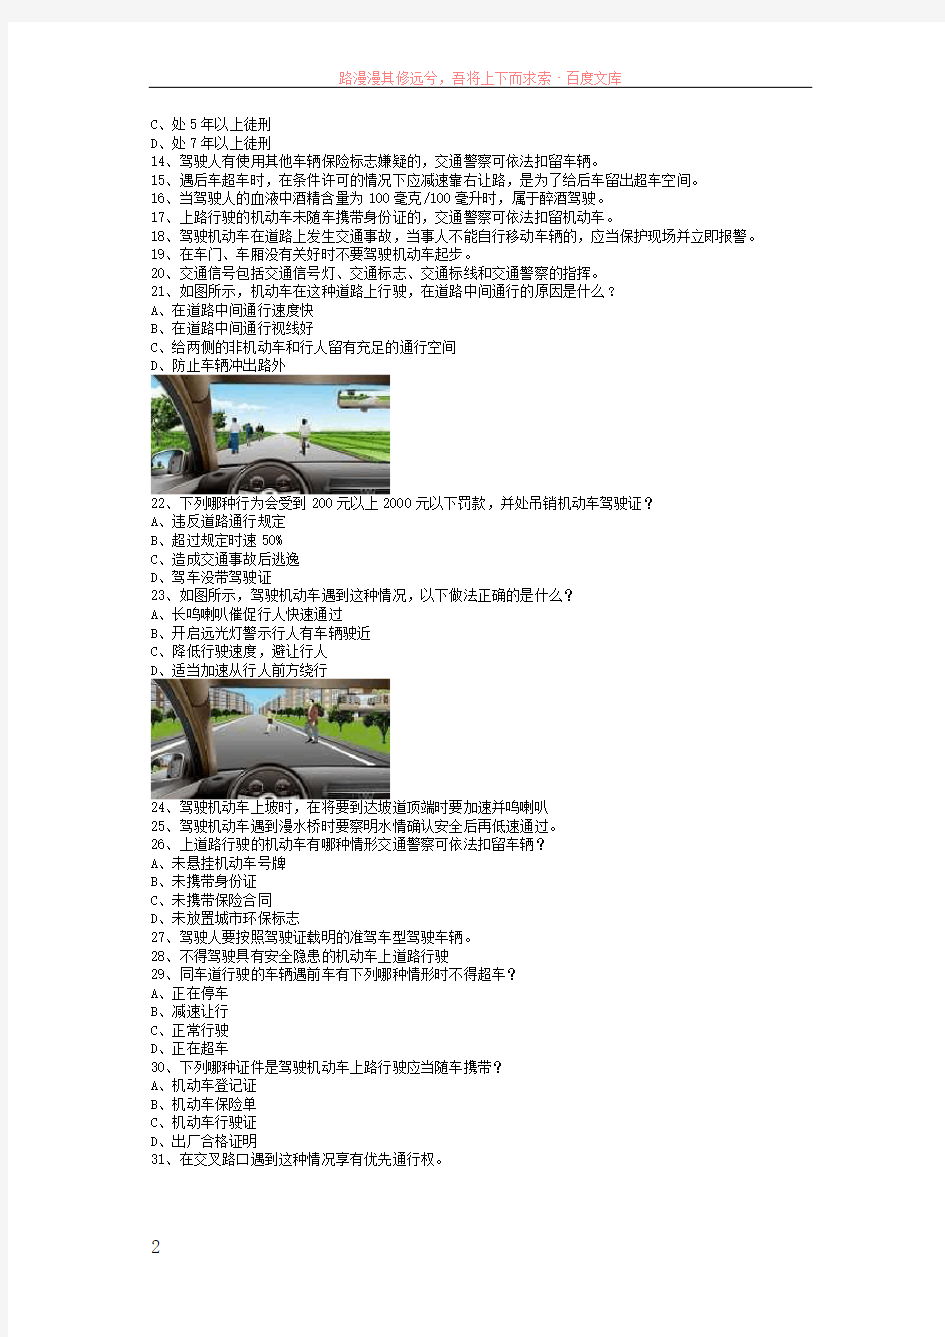 新田县驾驶证考试c1小车试题